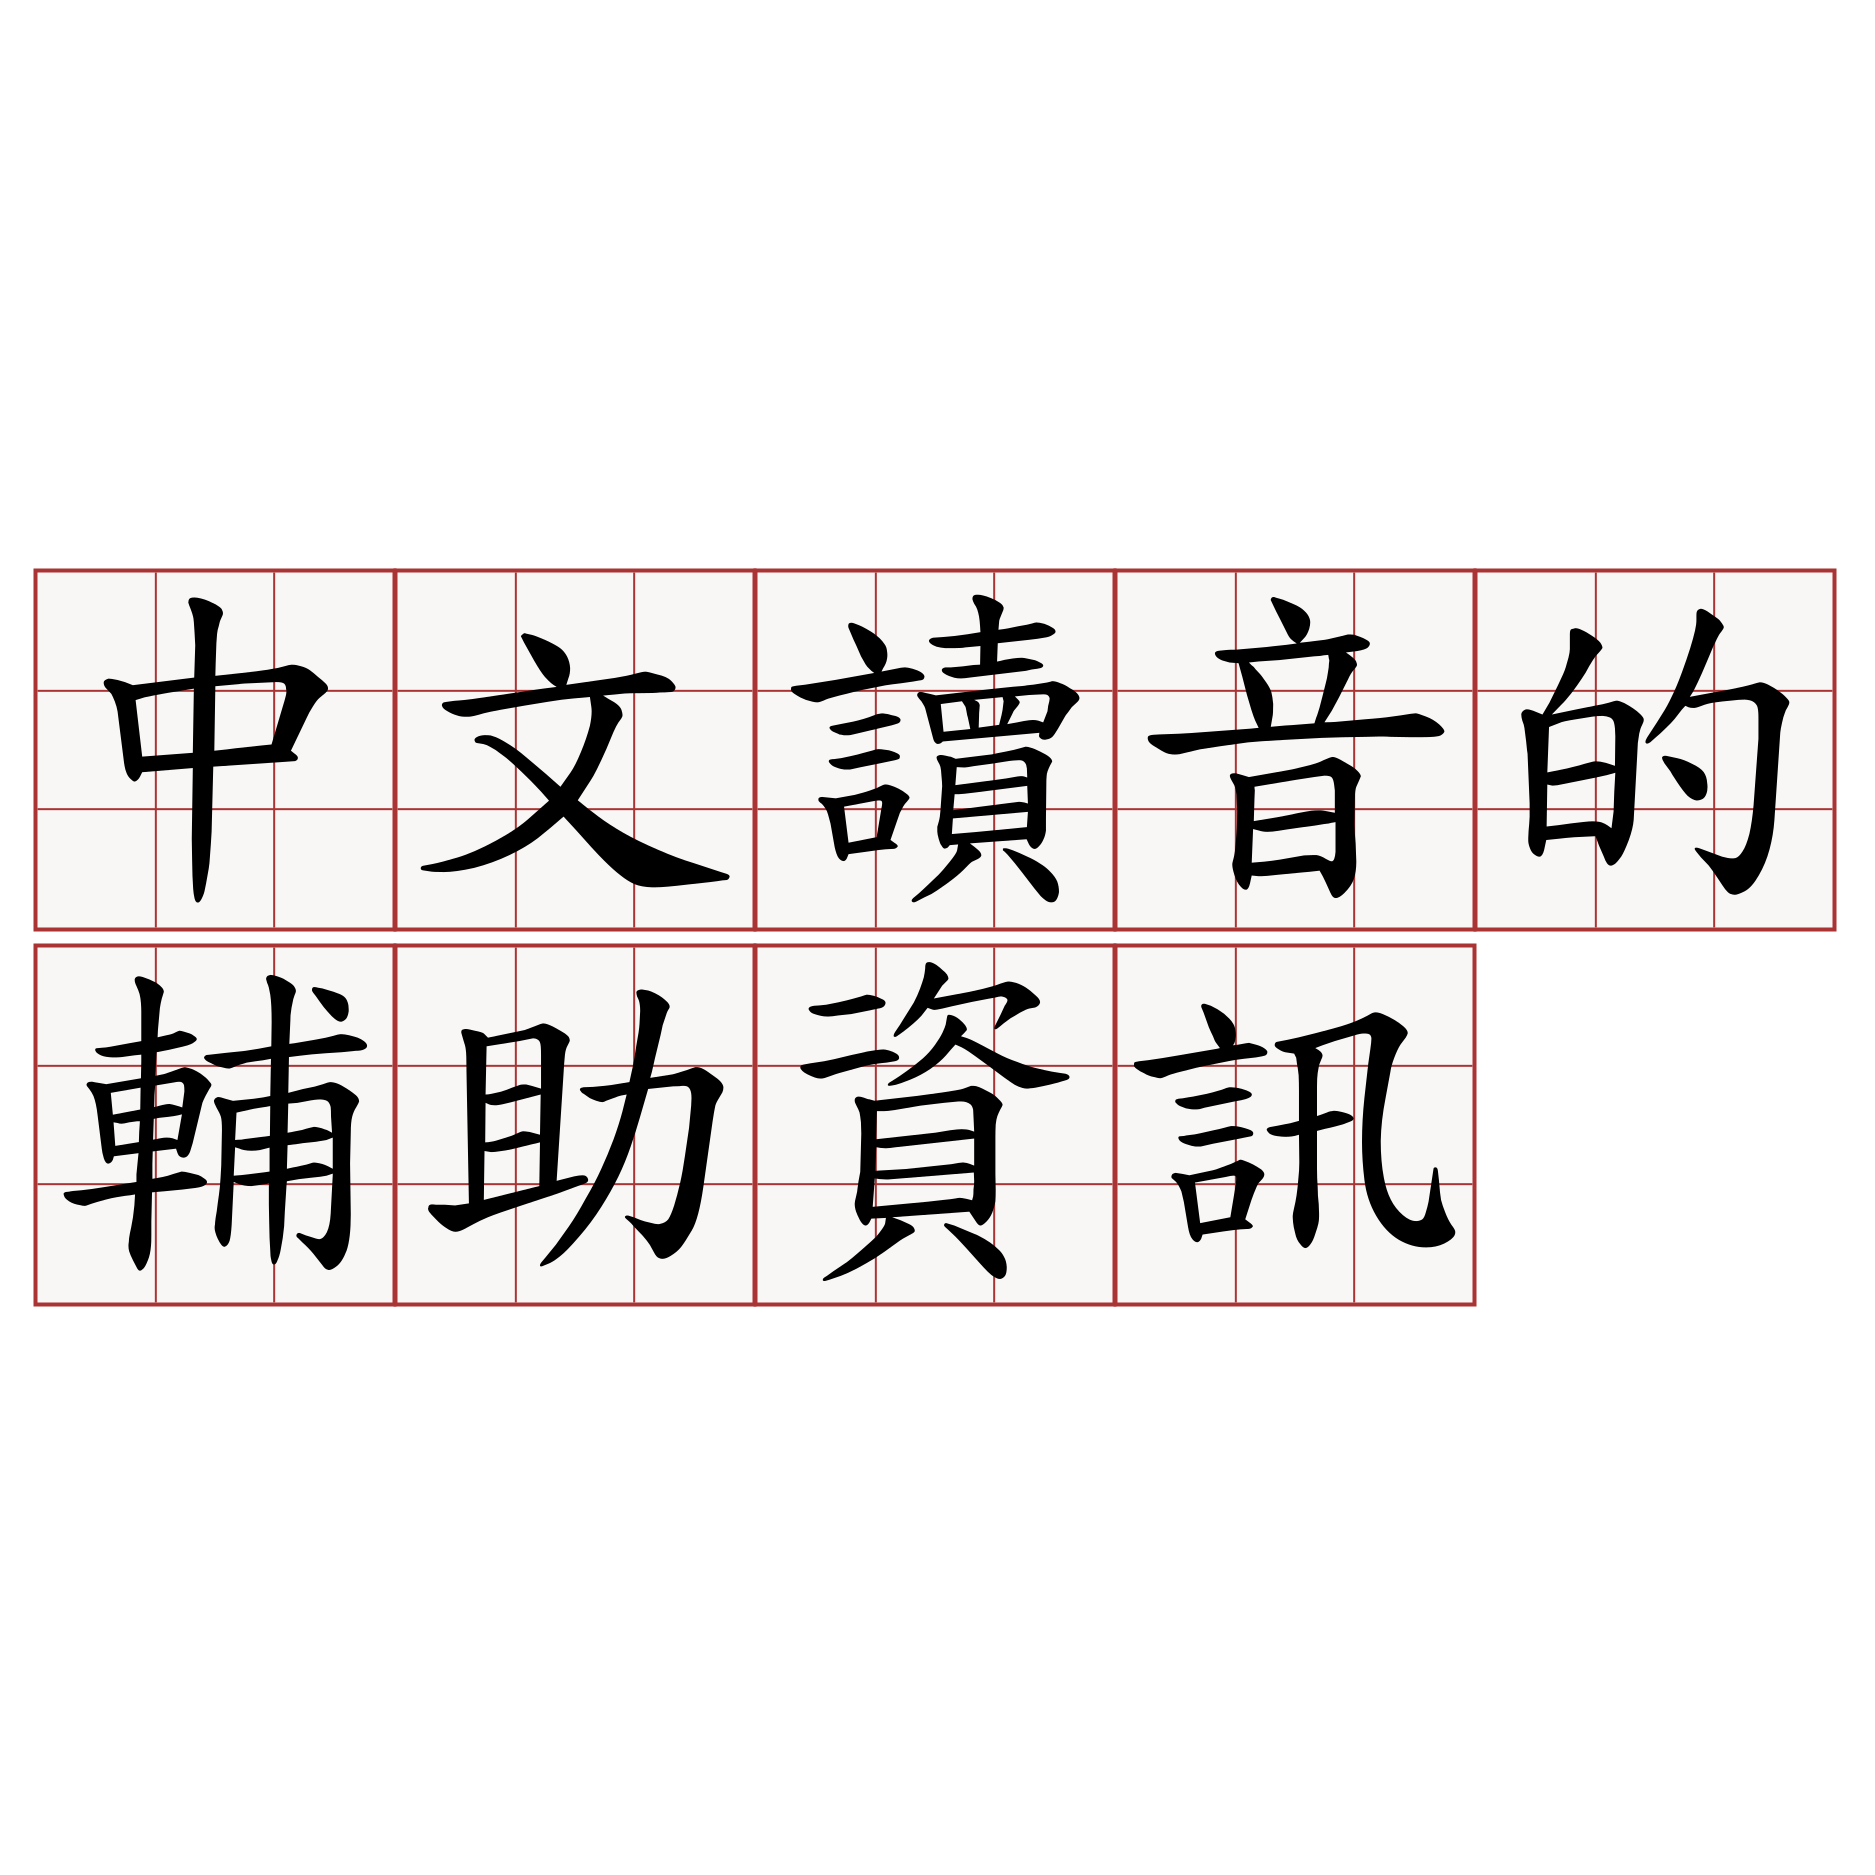 中文讀音的輔助資訊